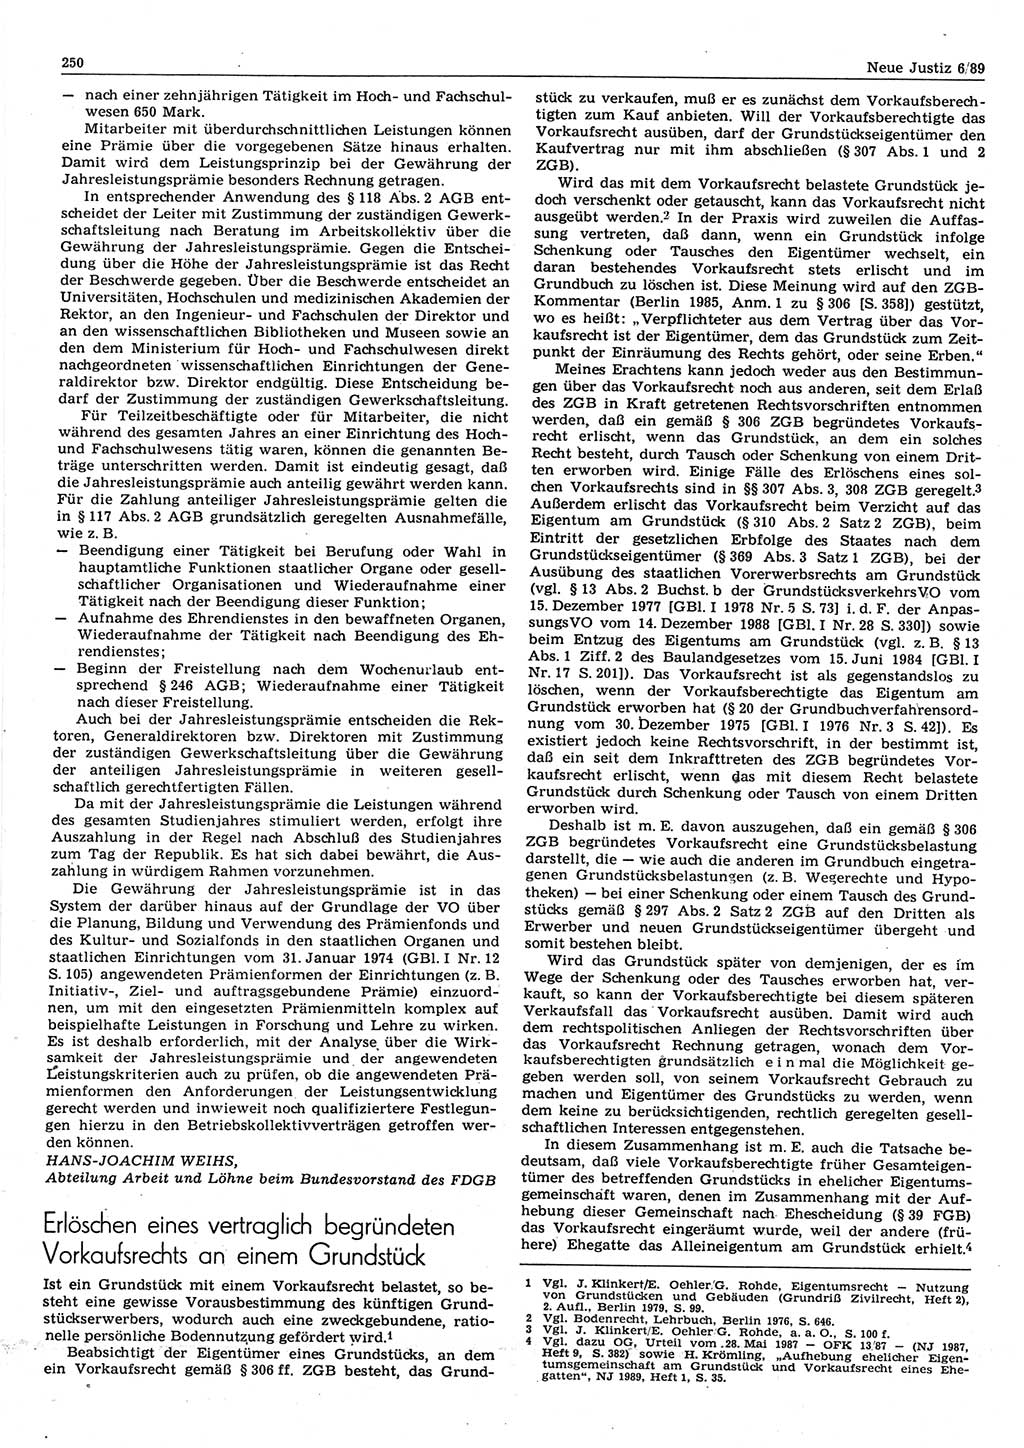 Neue Justiz (NJ), Zeitschrift für sozialistisches Recht und Gesetzlichkeit [Deutsche Demokratische Republik (DDR)], 43. Jahrgang 1989, Seite 250 (NJ DDR 1989, S. 250)